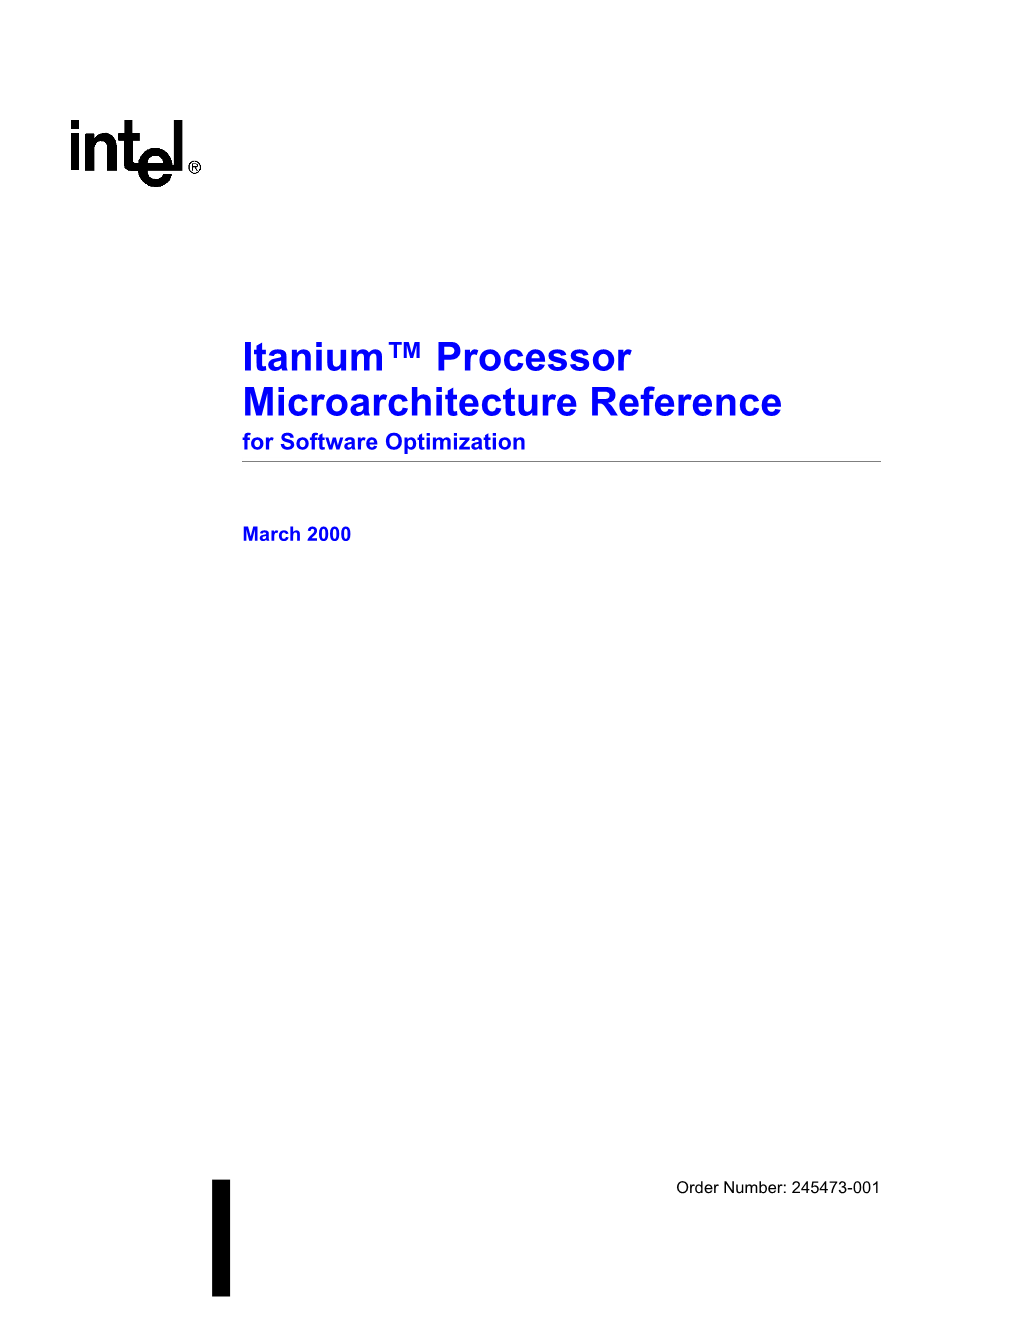 IA-64 Itanium Processor Microarchitecture Reference